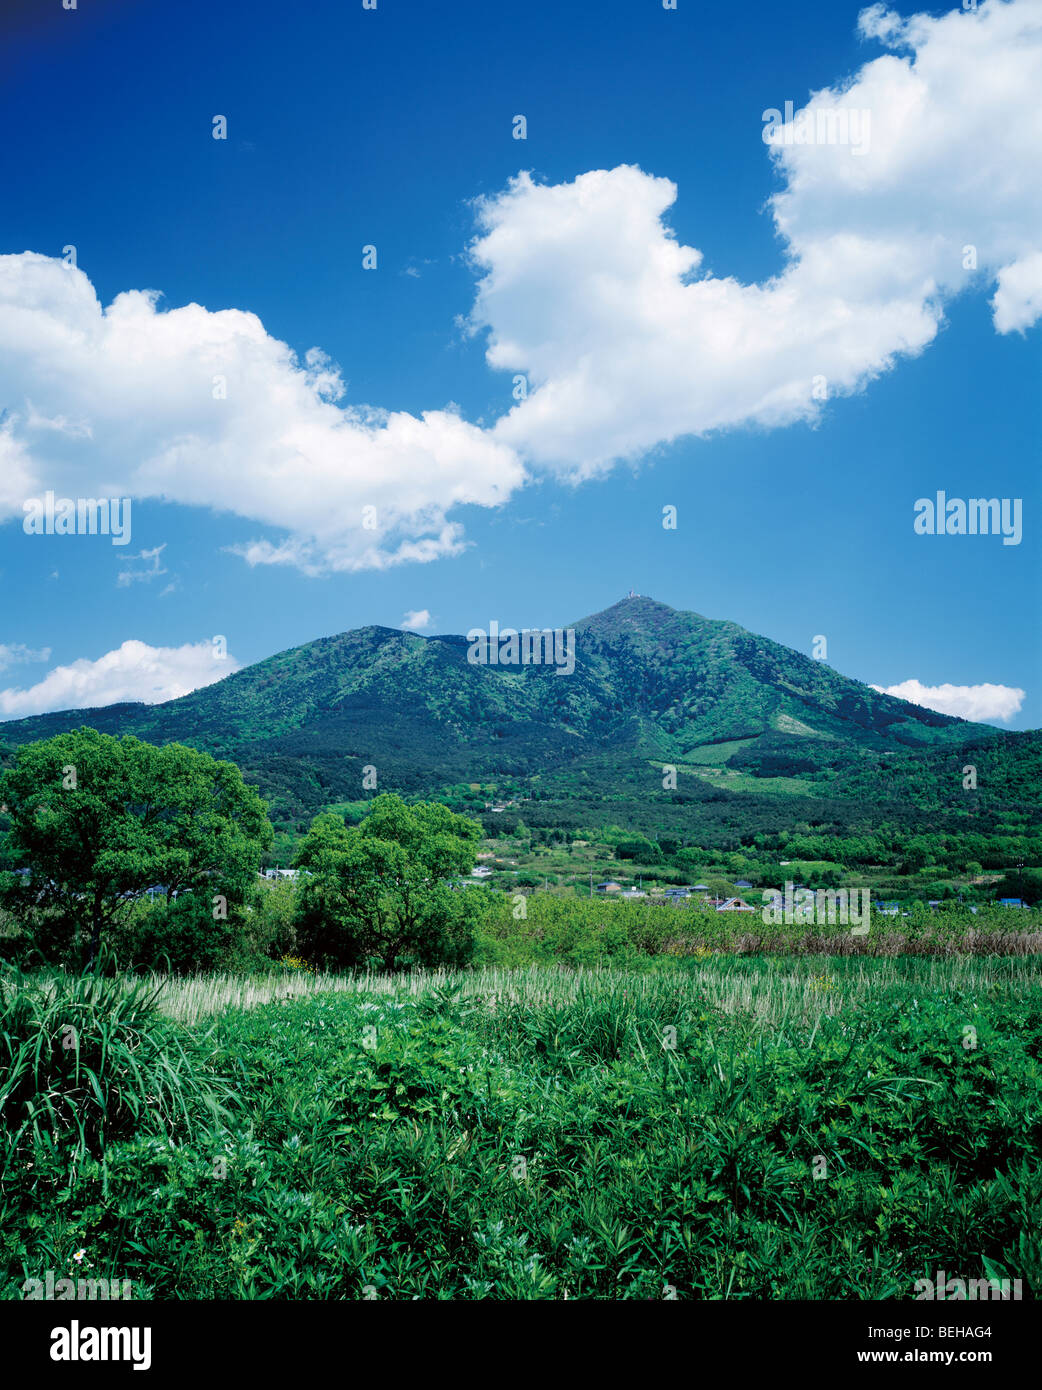 Mt. Tsukuba, Ibaraki Prefecture, Japan Stock Photo